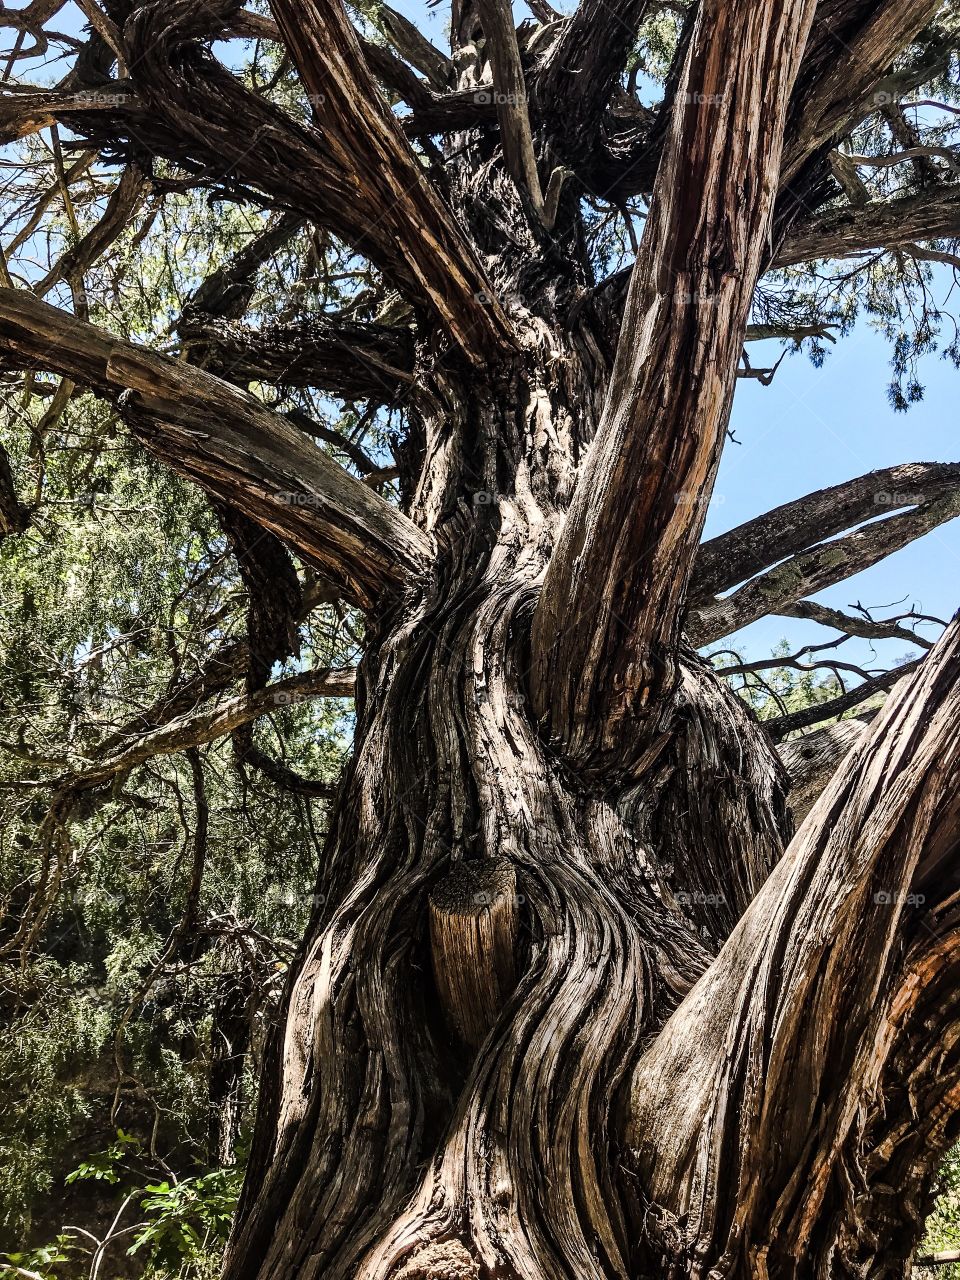 Ancient evergreen tree in Walnut Canyon, Arizona